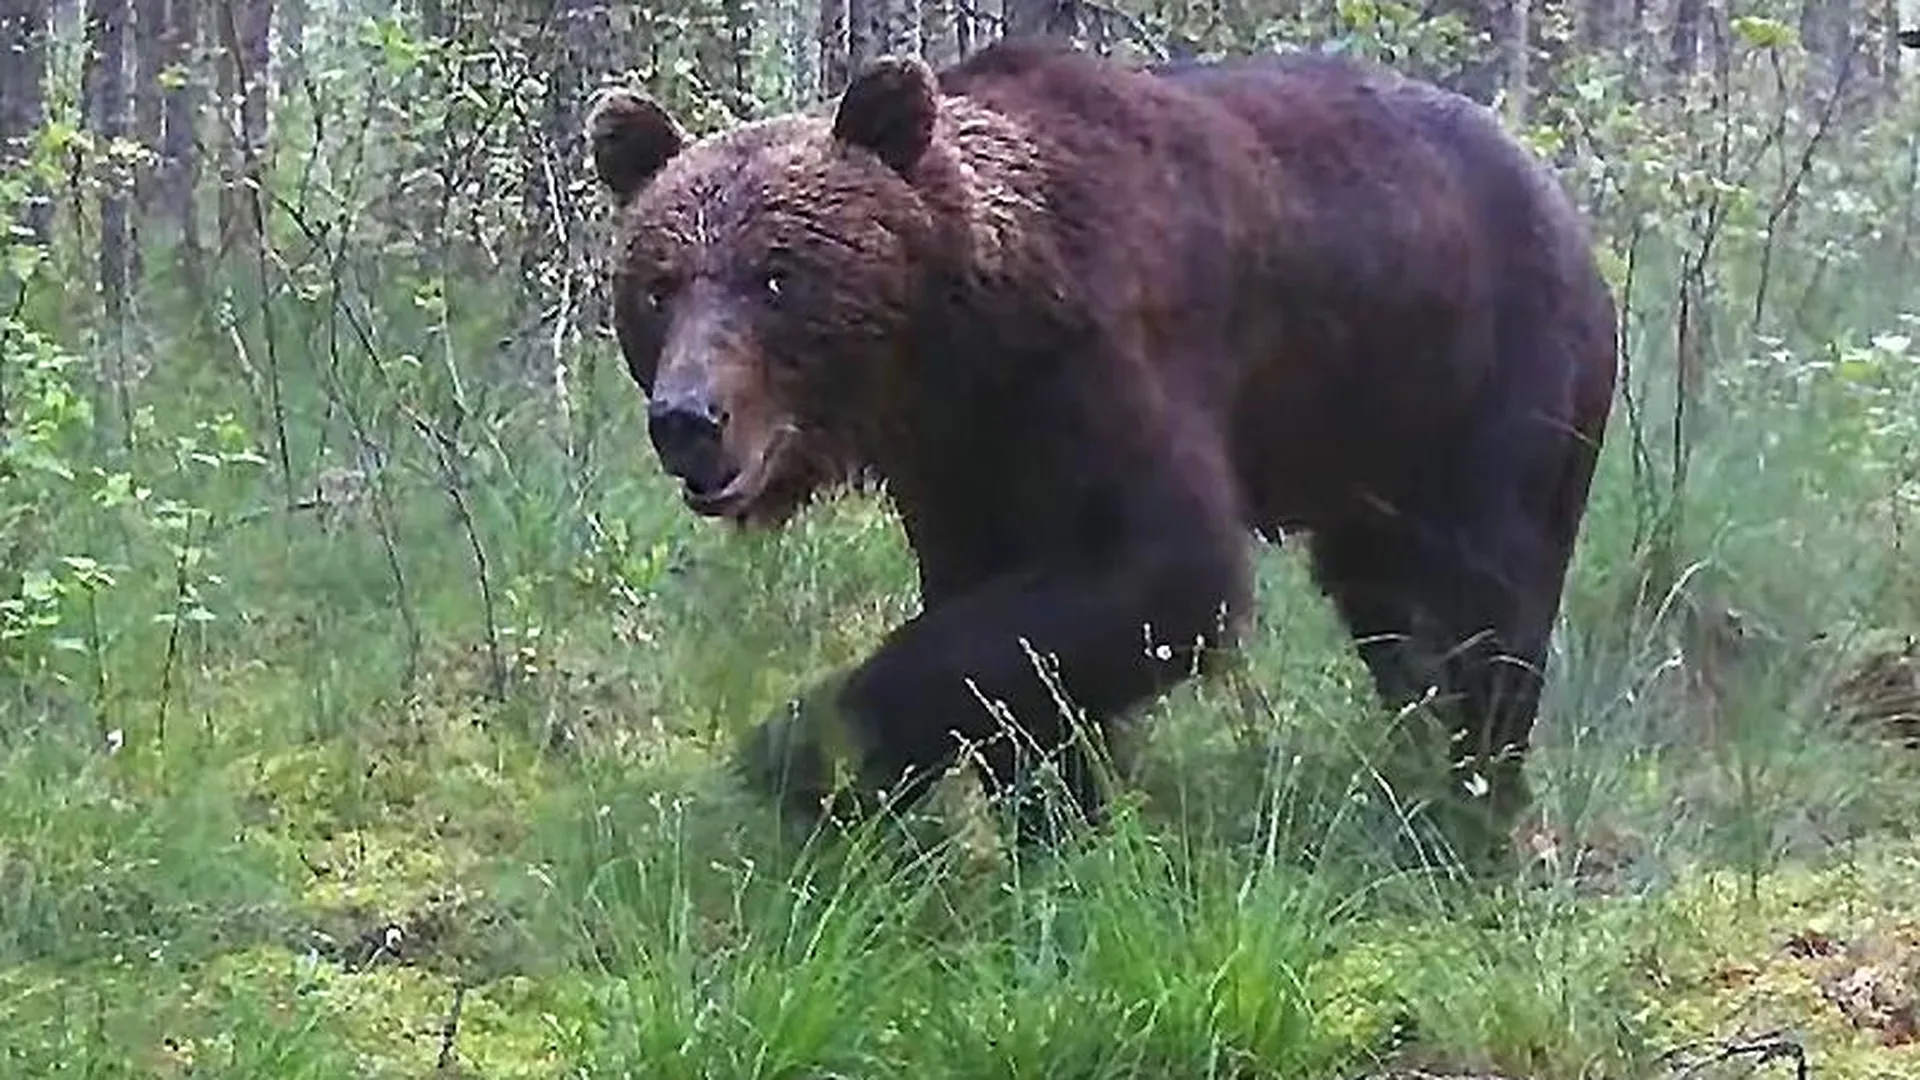 Появление медведей зафиксировали сразу в нескольких местах в Подмосковье